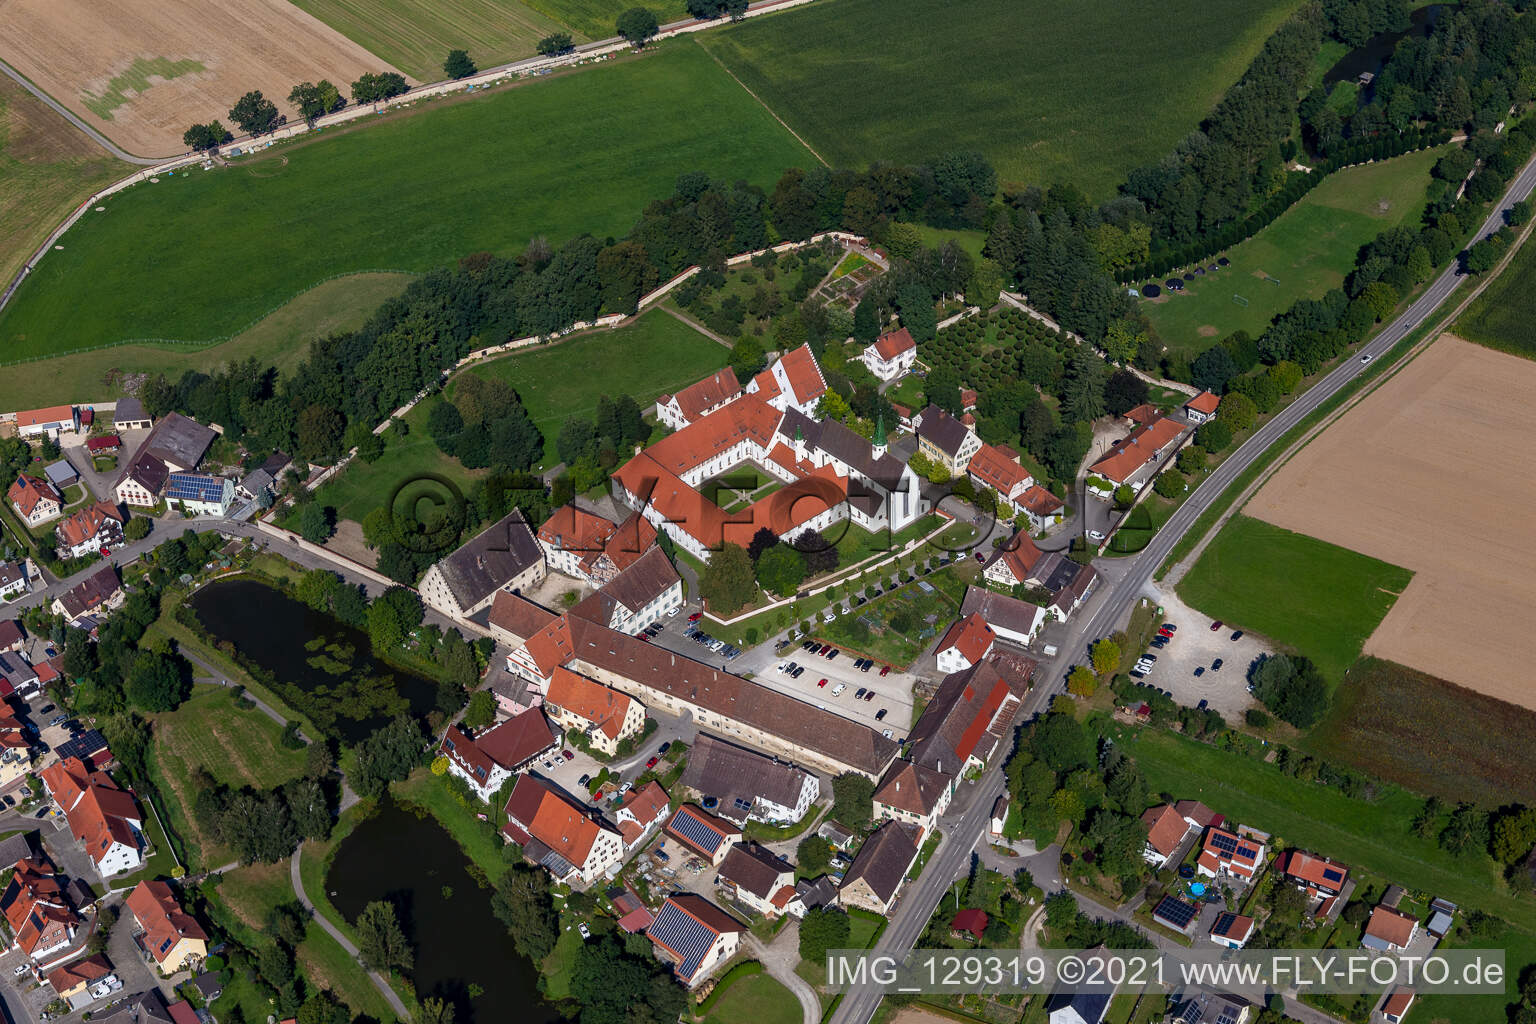 Photographie aérienne de Cathédrale Sainte-Anne, centre de conférence du monastère de Heiligkreuztal à Altheim dans le département Bade-Wurtemberg, Allemagne